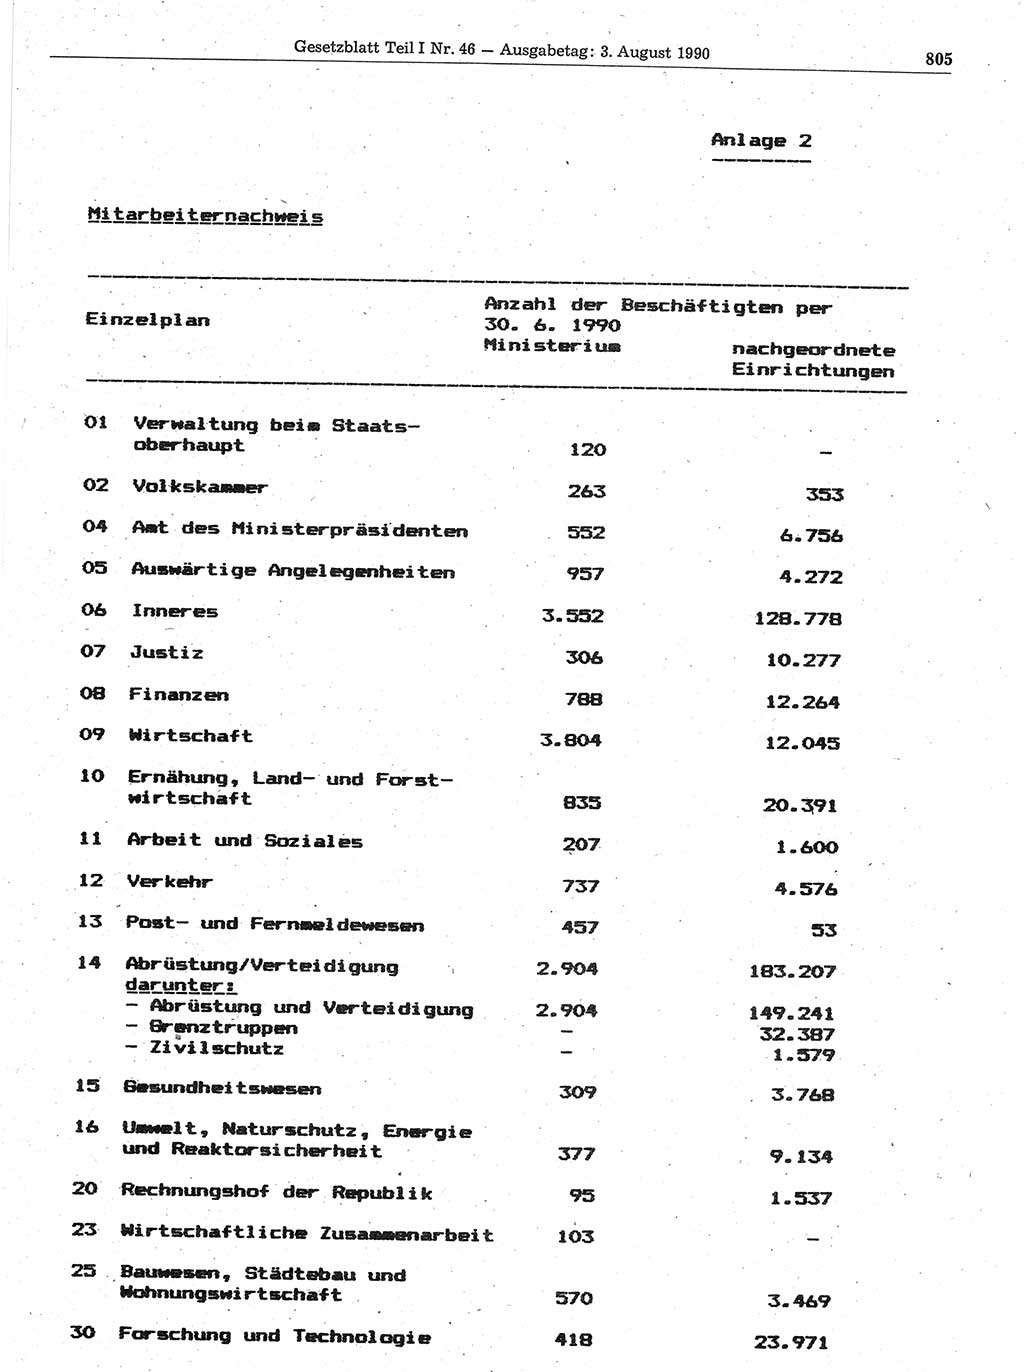 Gesetzblatt (GBl.) der Deutschen Demokratischen Republik (DDR) Teil Ⅰ 1990, Seite 805 (GBl. DDR Ⅰ 1990, S. 805)